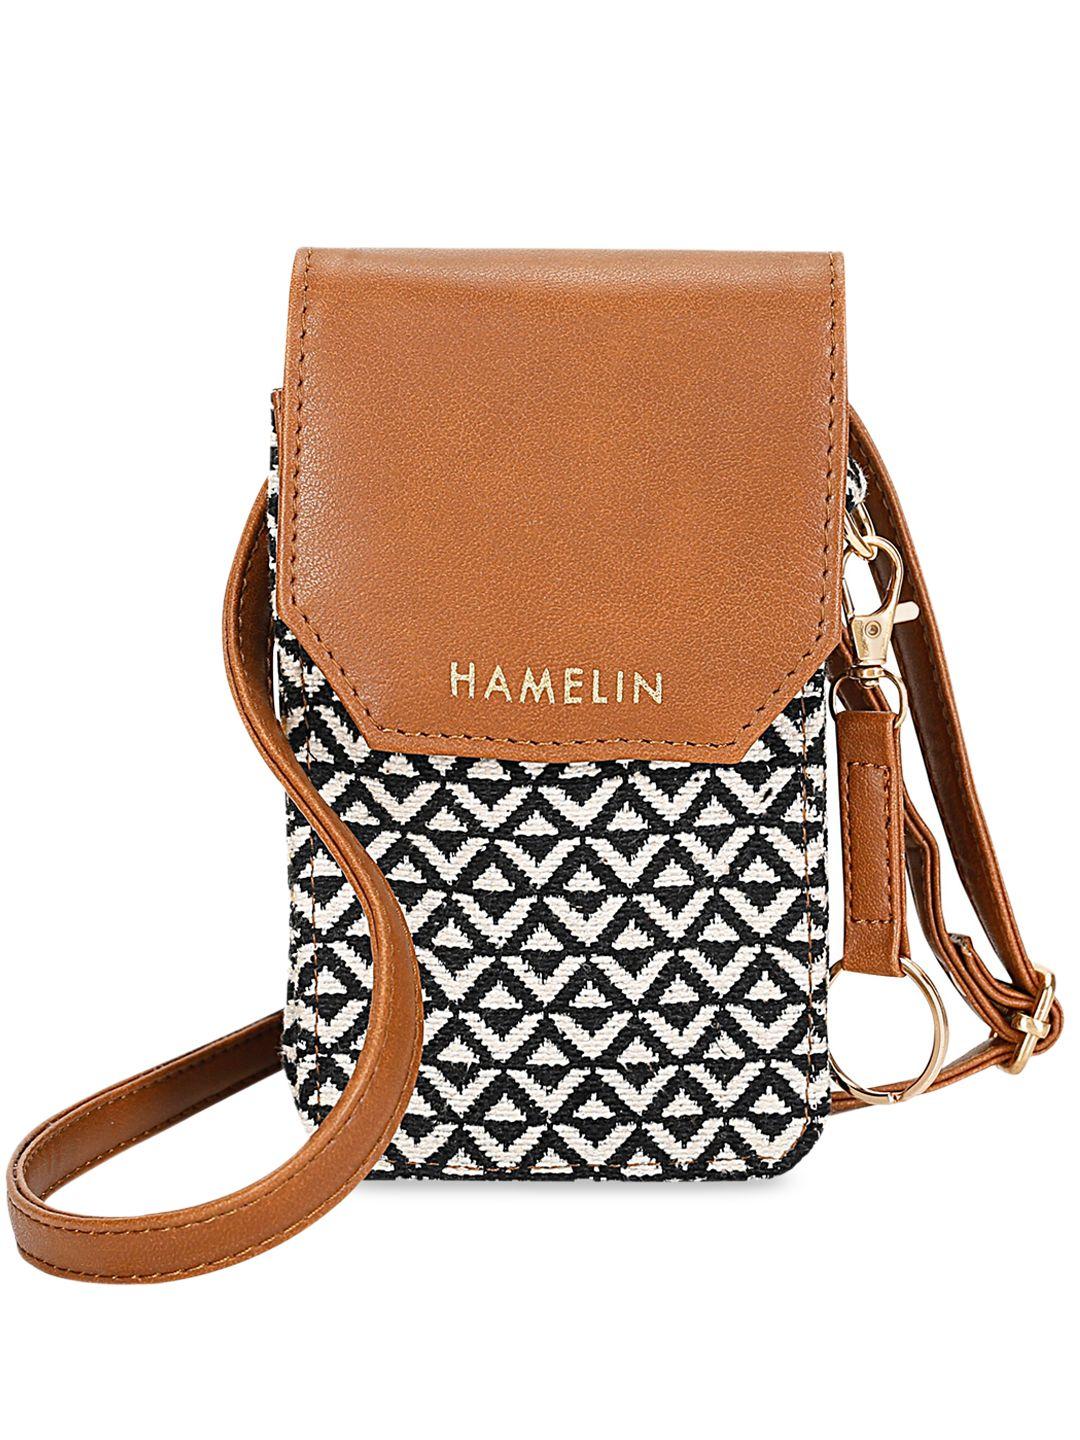 hamelin geometric printed structured sling bag